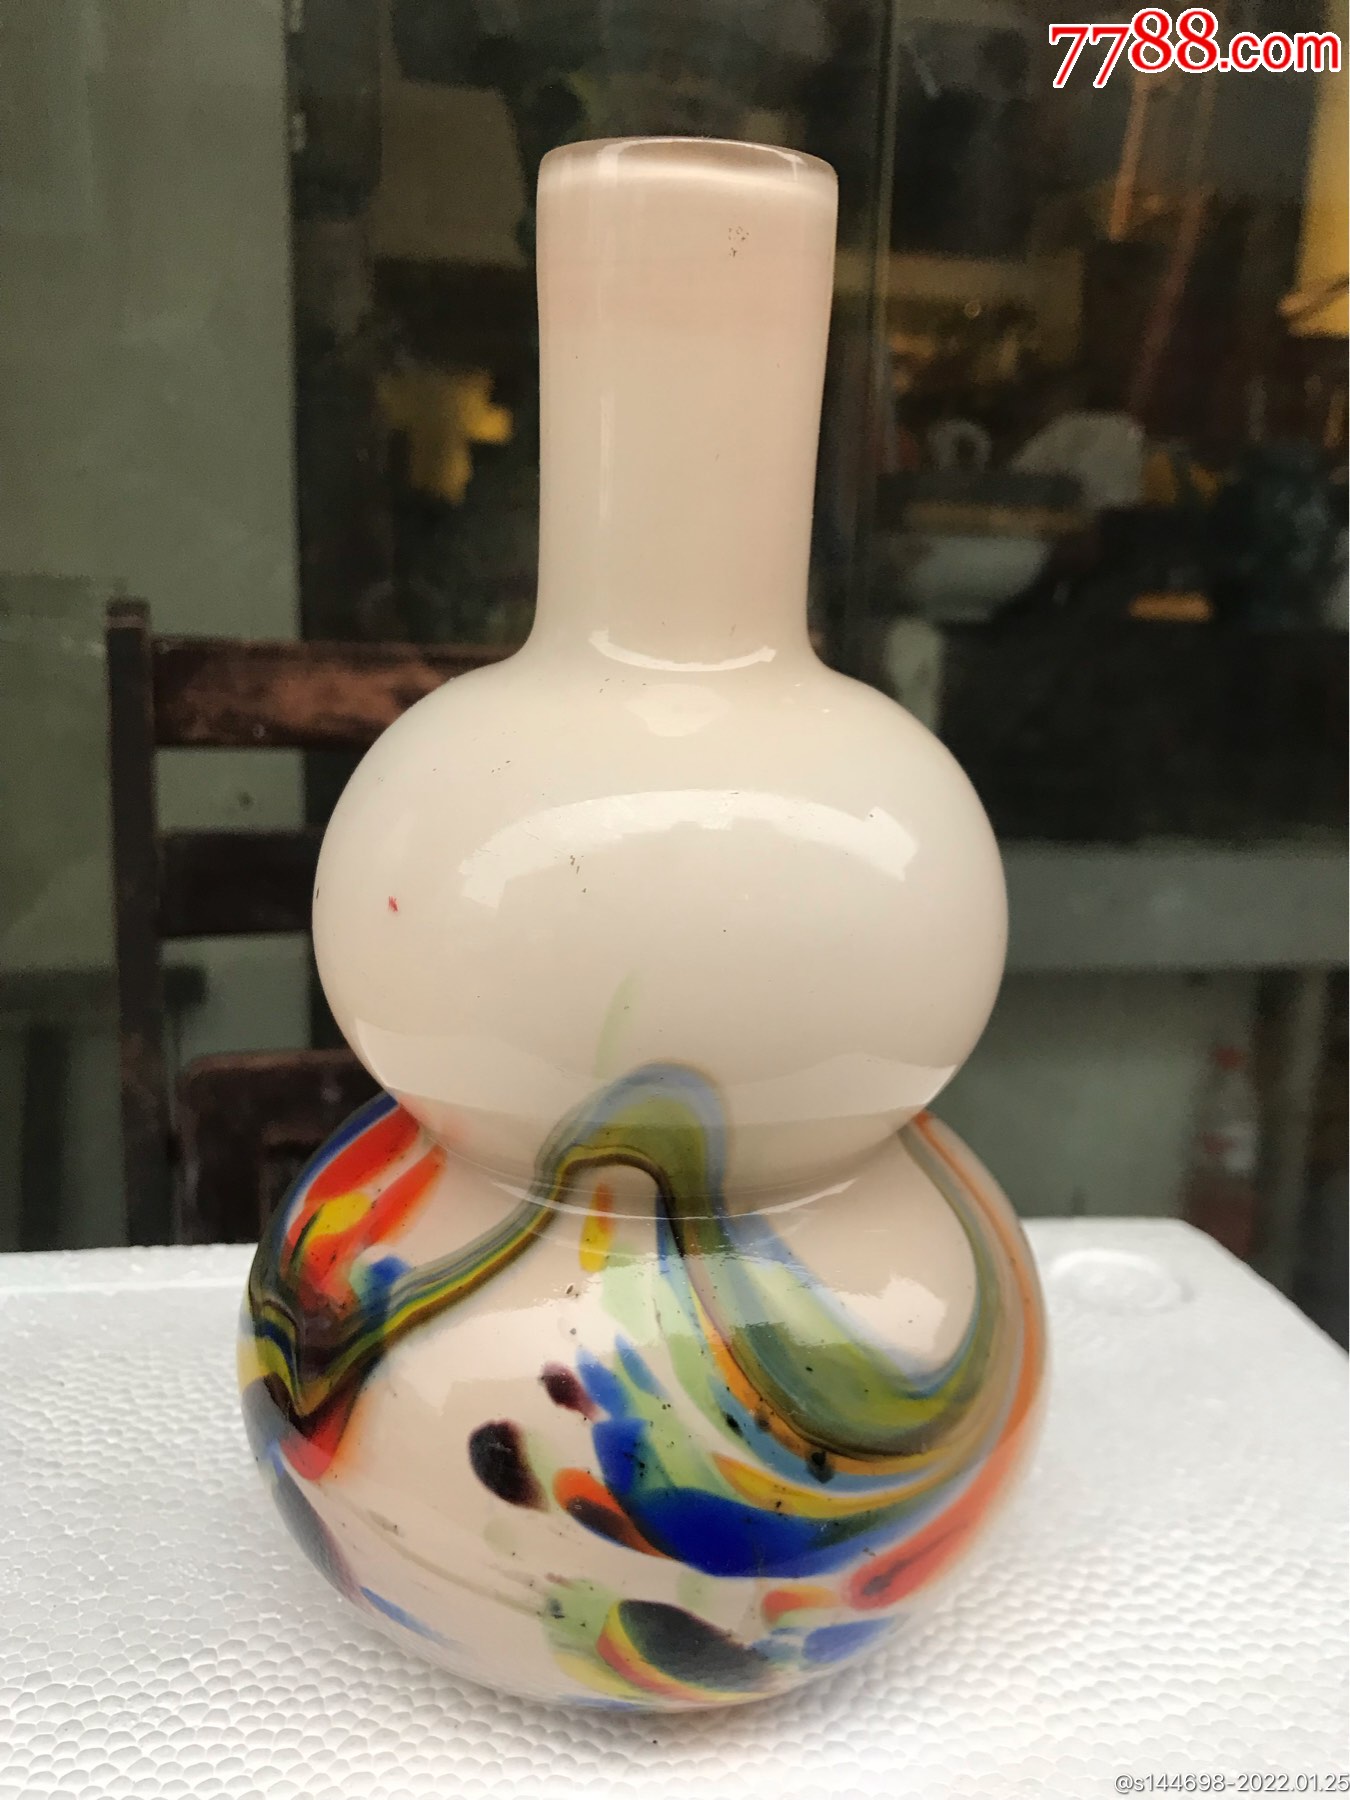 70年代手工制作玻璃彩色套料葫芦型花瓶造型独特特别少见颜色鲜艳漂亮